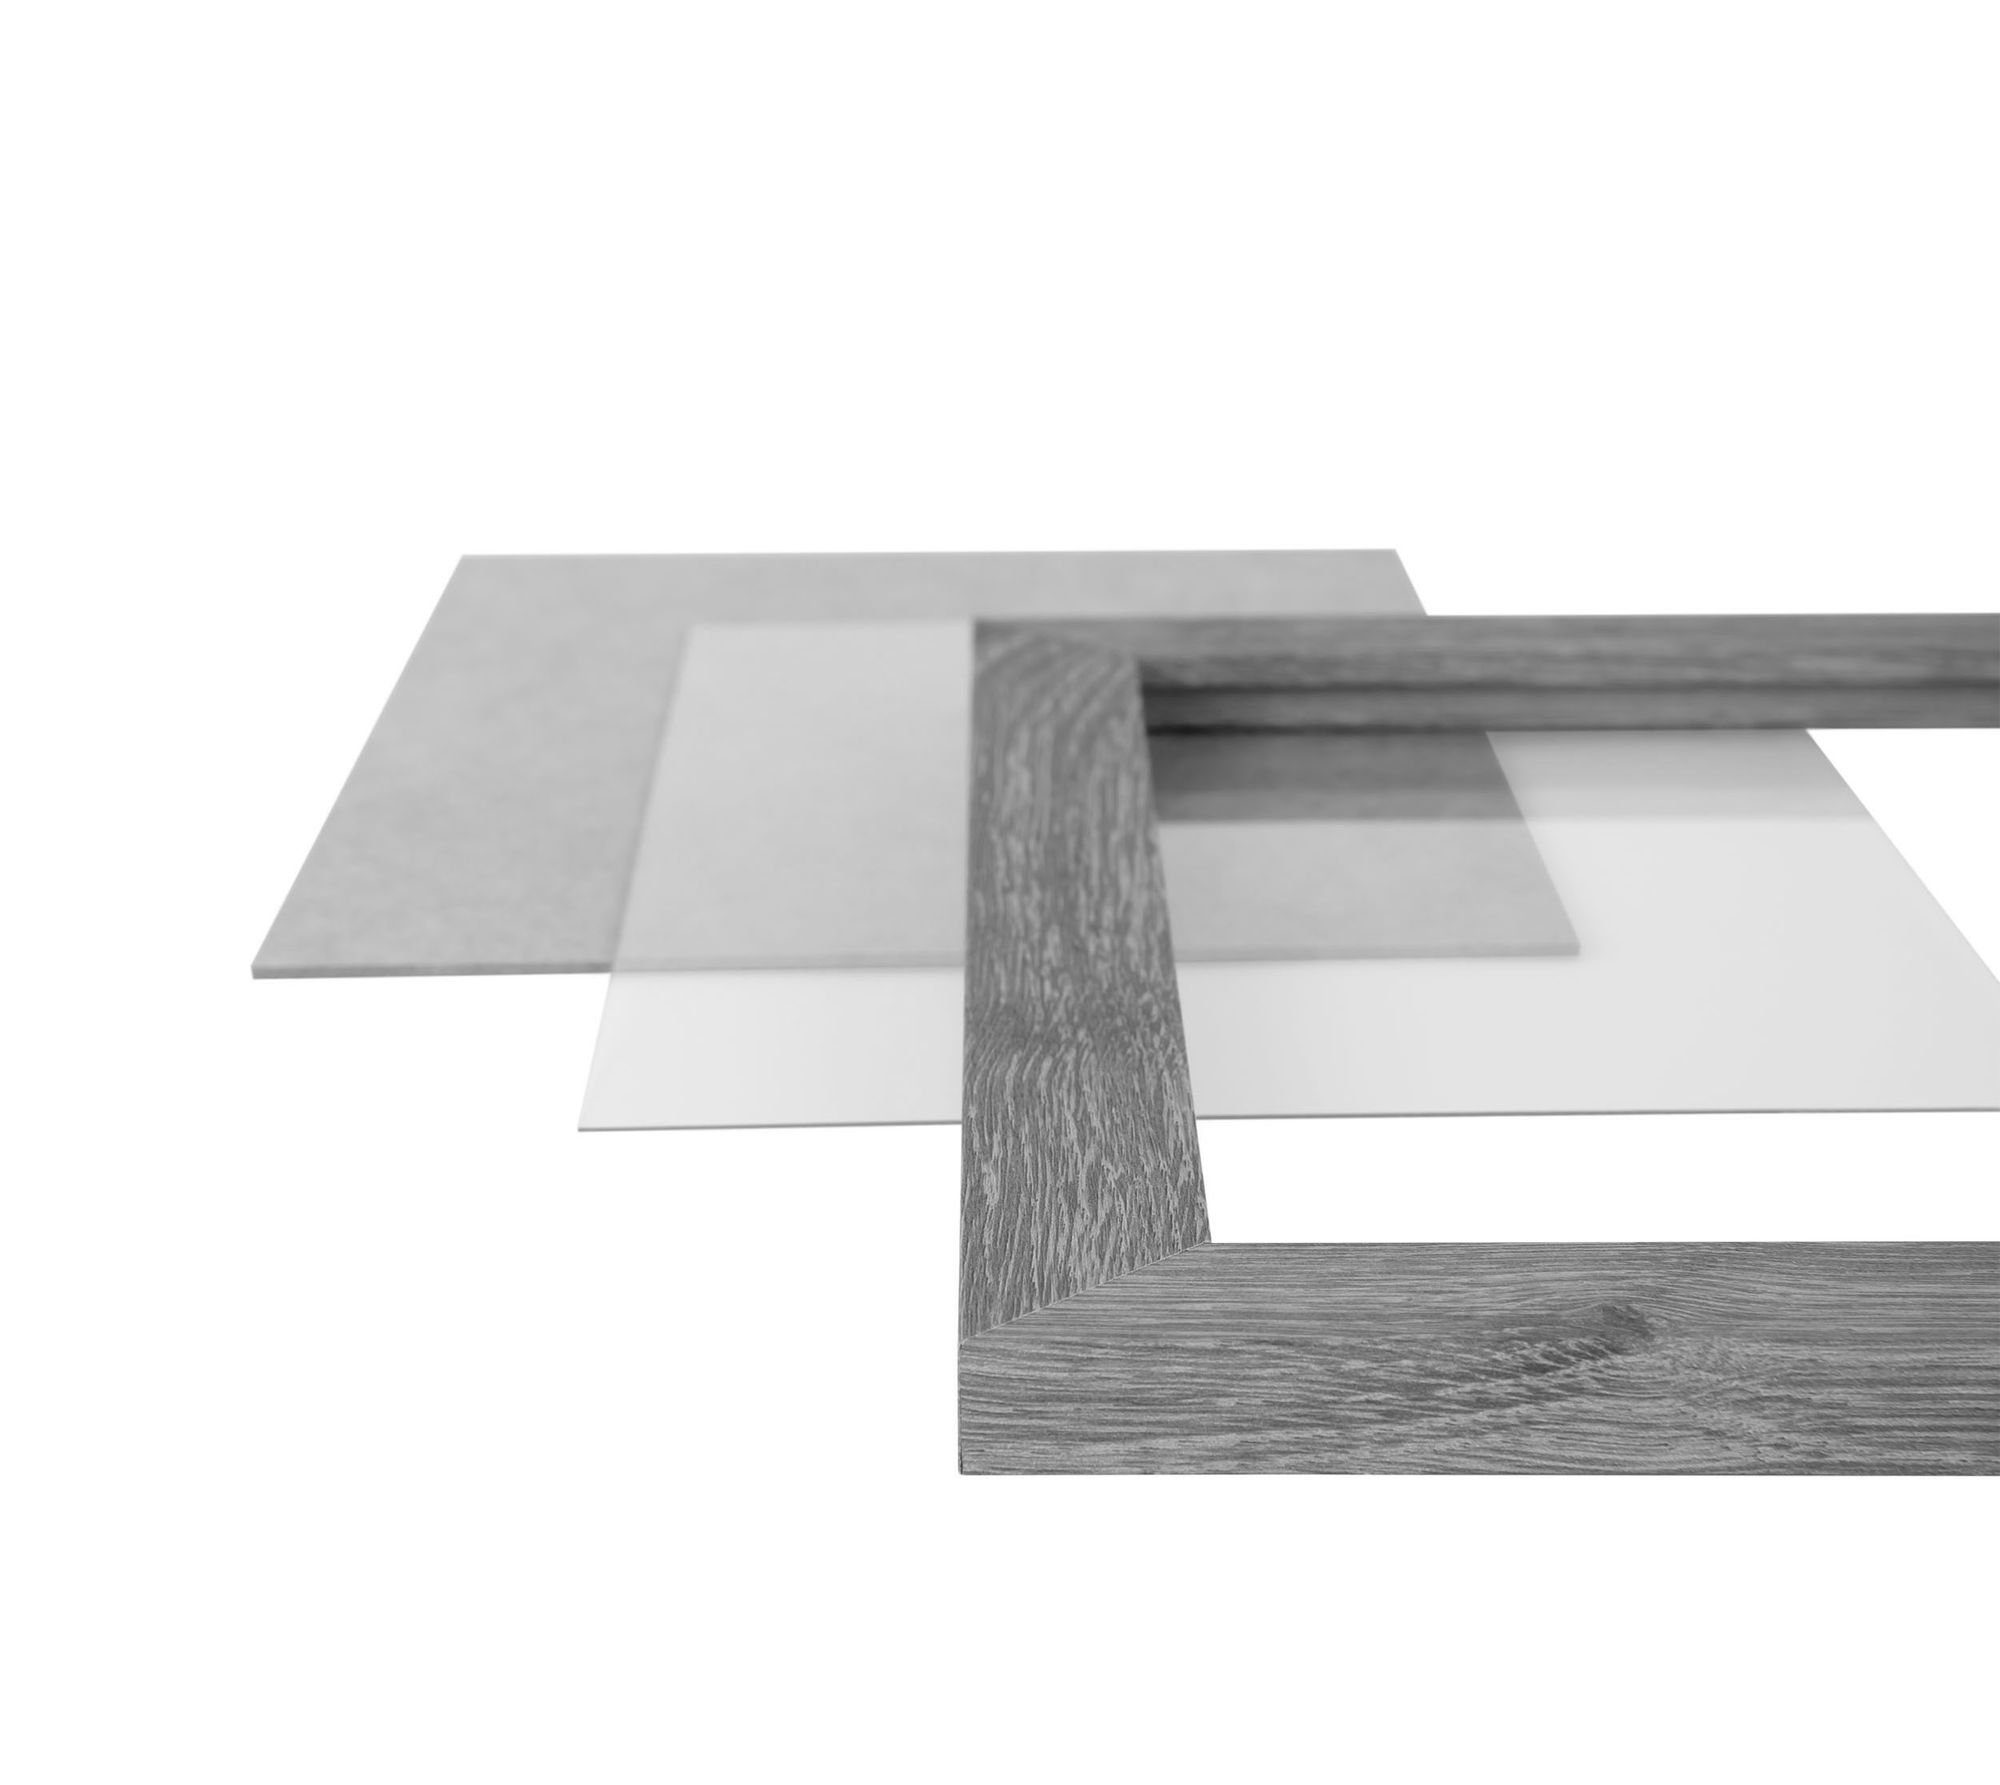 Clamaro Bilderrahmen Bilderrahmen CLAMARO 'Collage' Maß nach Aufhänger FSC® Acrylglas, Holz Rückwand gebürstet Rahmen in und Moderner inkl. 30x34 eckiger handgefertigt silber MDF